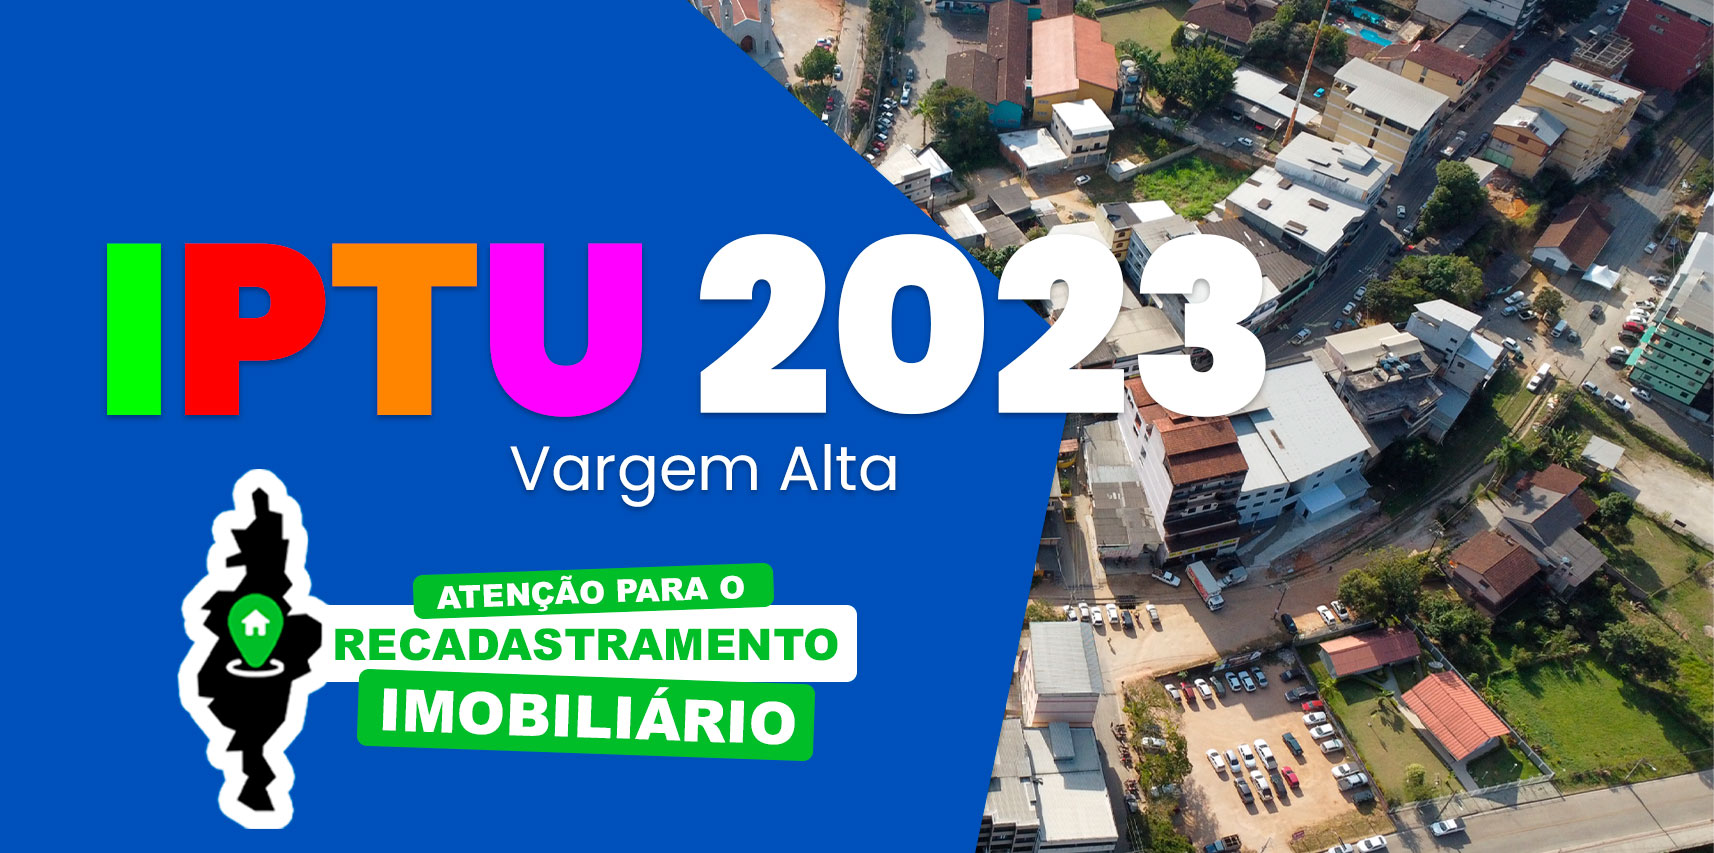 Prefeitura de Vargem Alta alerta os contribuintes quanto ao prazo de pagamento do IPTU e TAXA DE LIXO de 2023